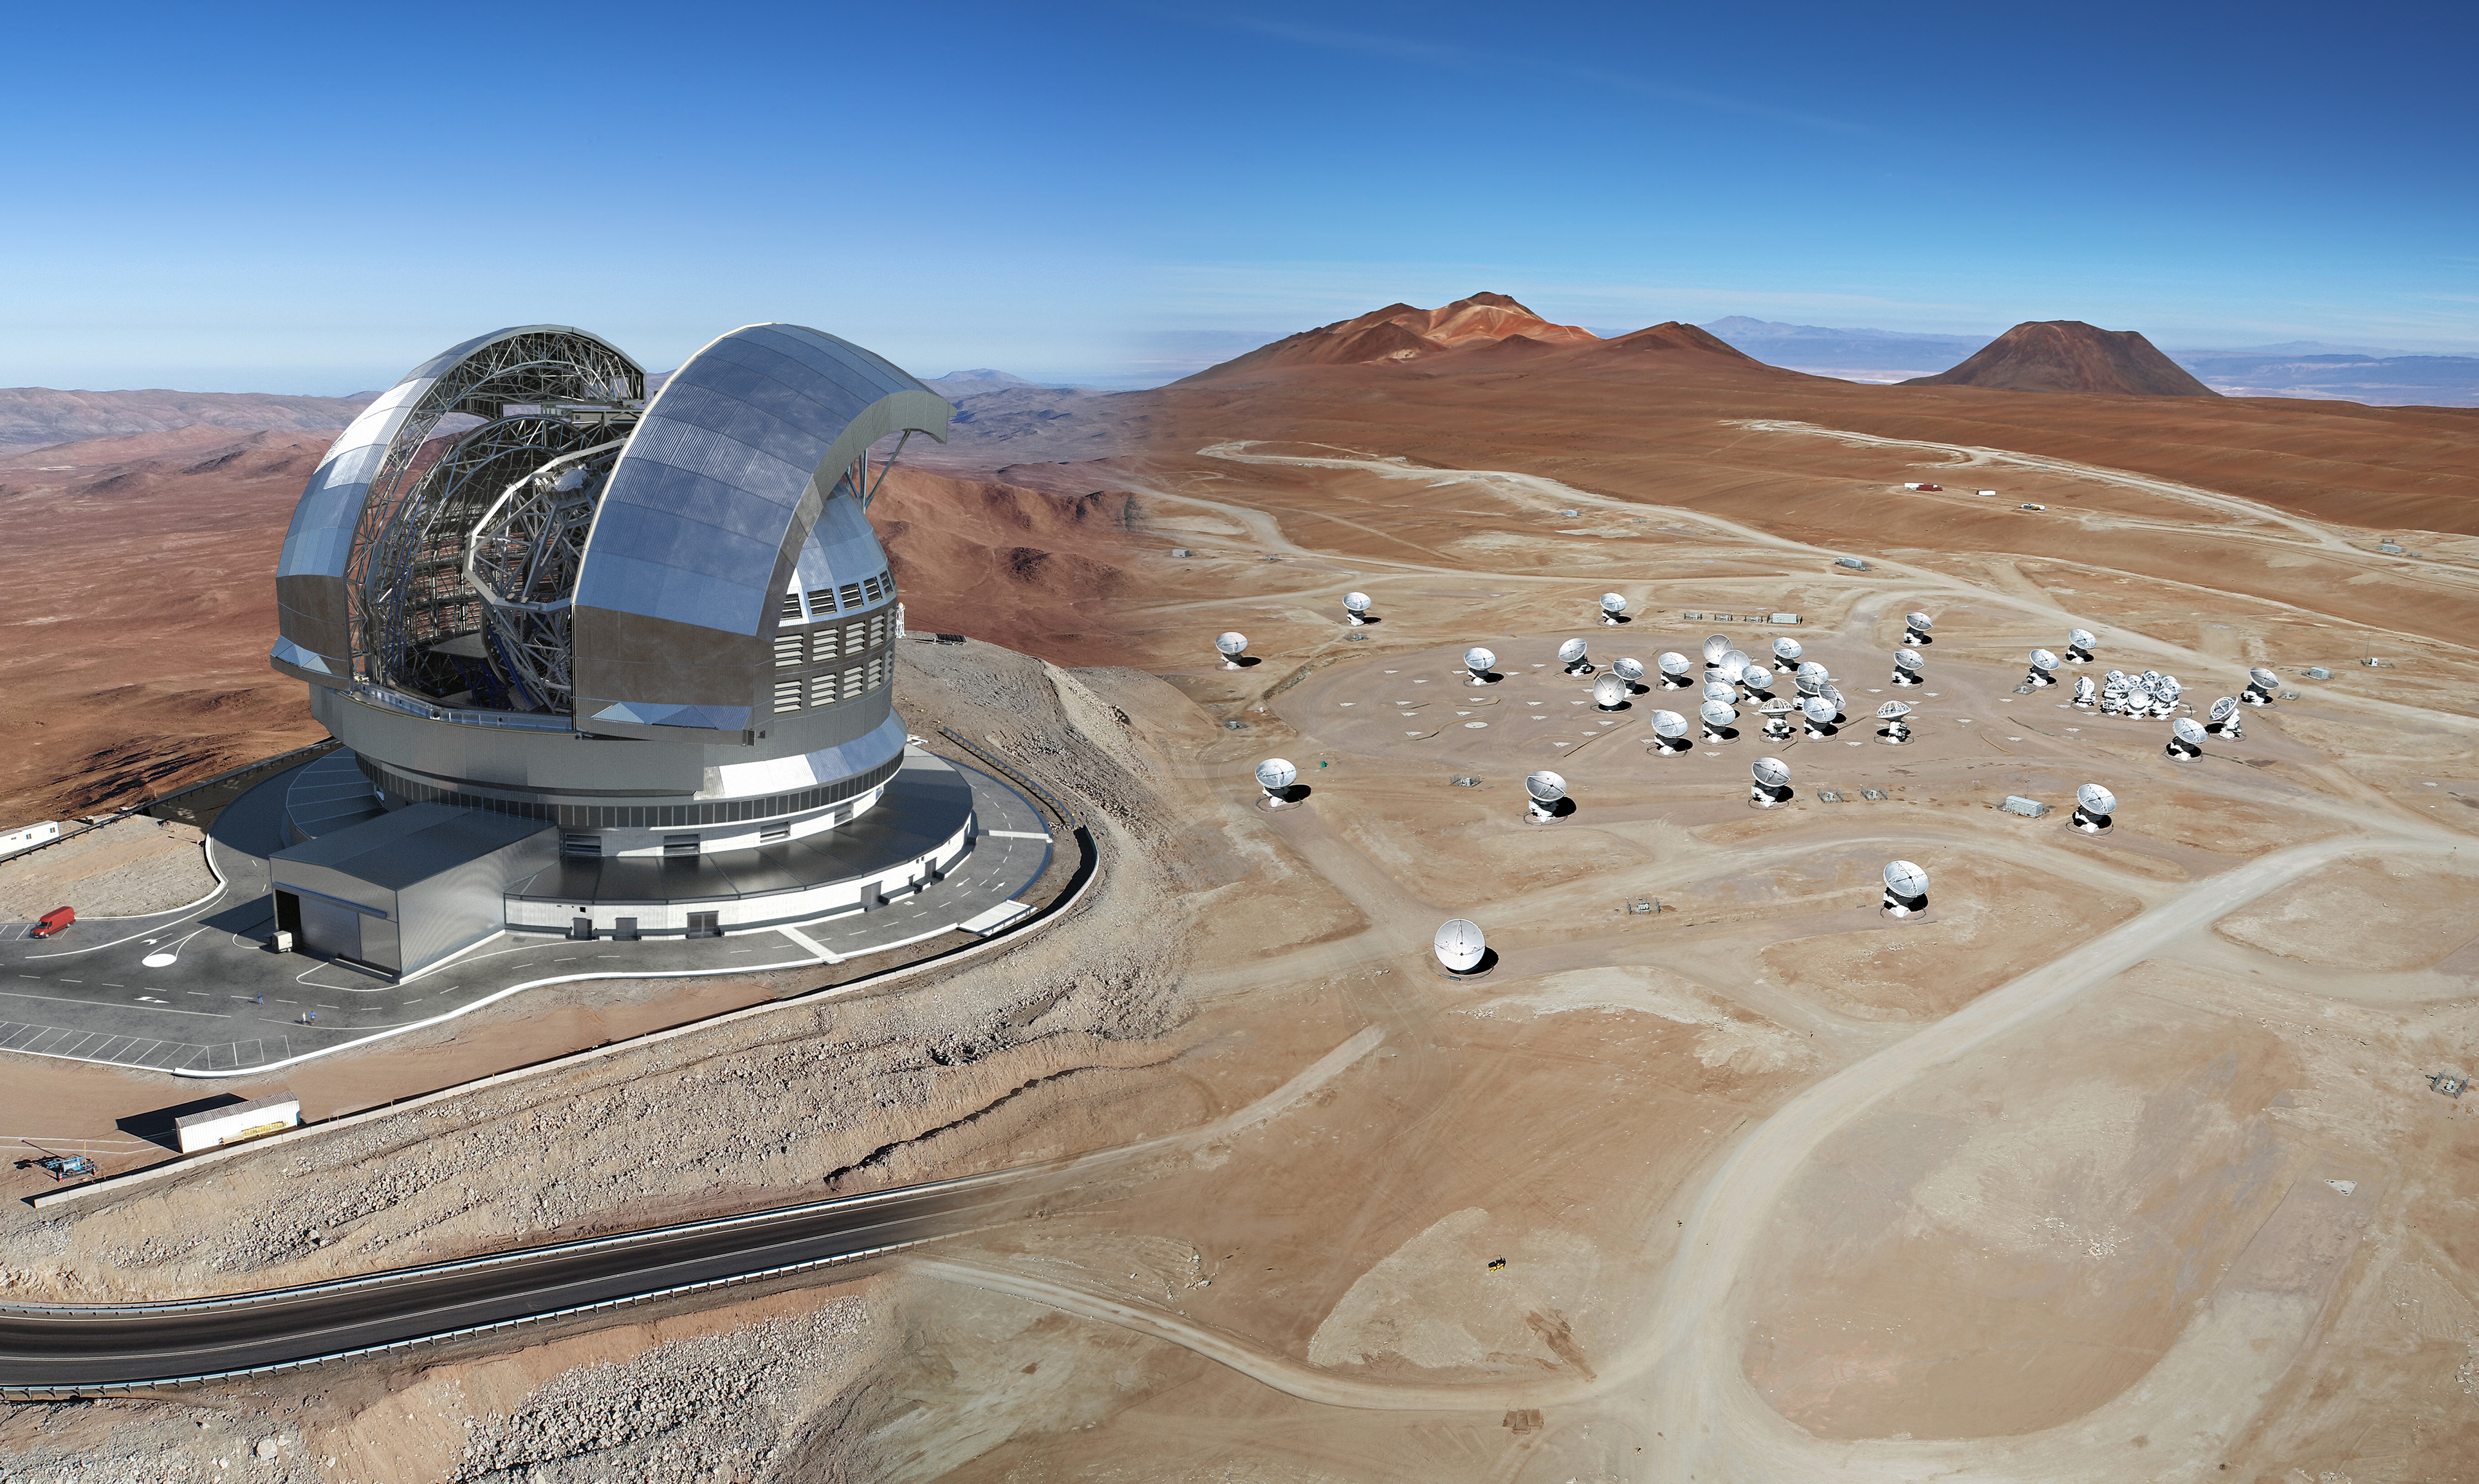 Nuevo acuerdo entre ESO, ALMA y REUNA multiplicará10 veces la capacidad de transmisión de datos astronómicos